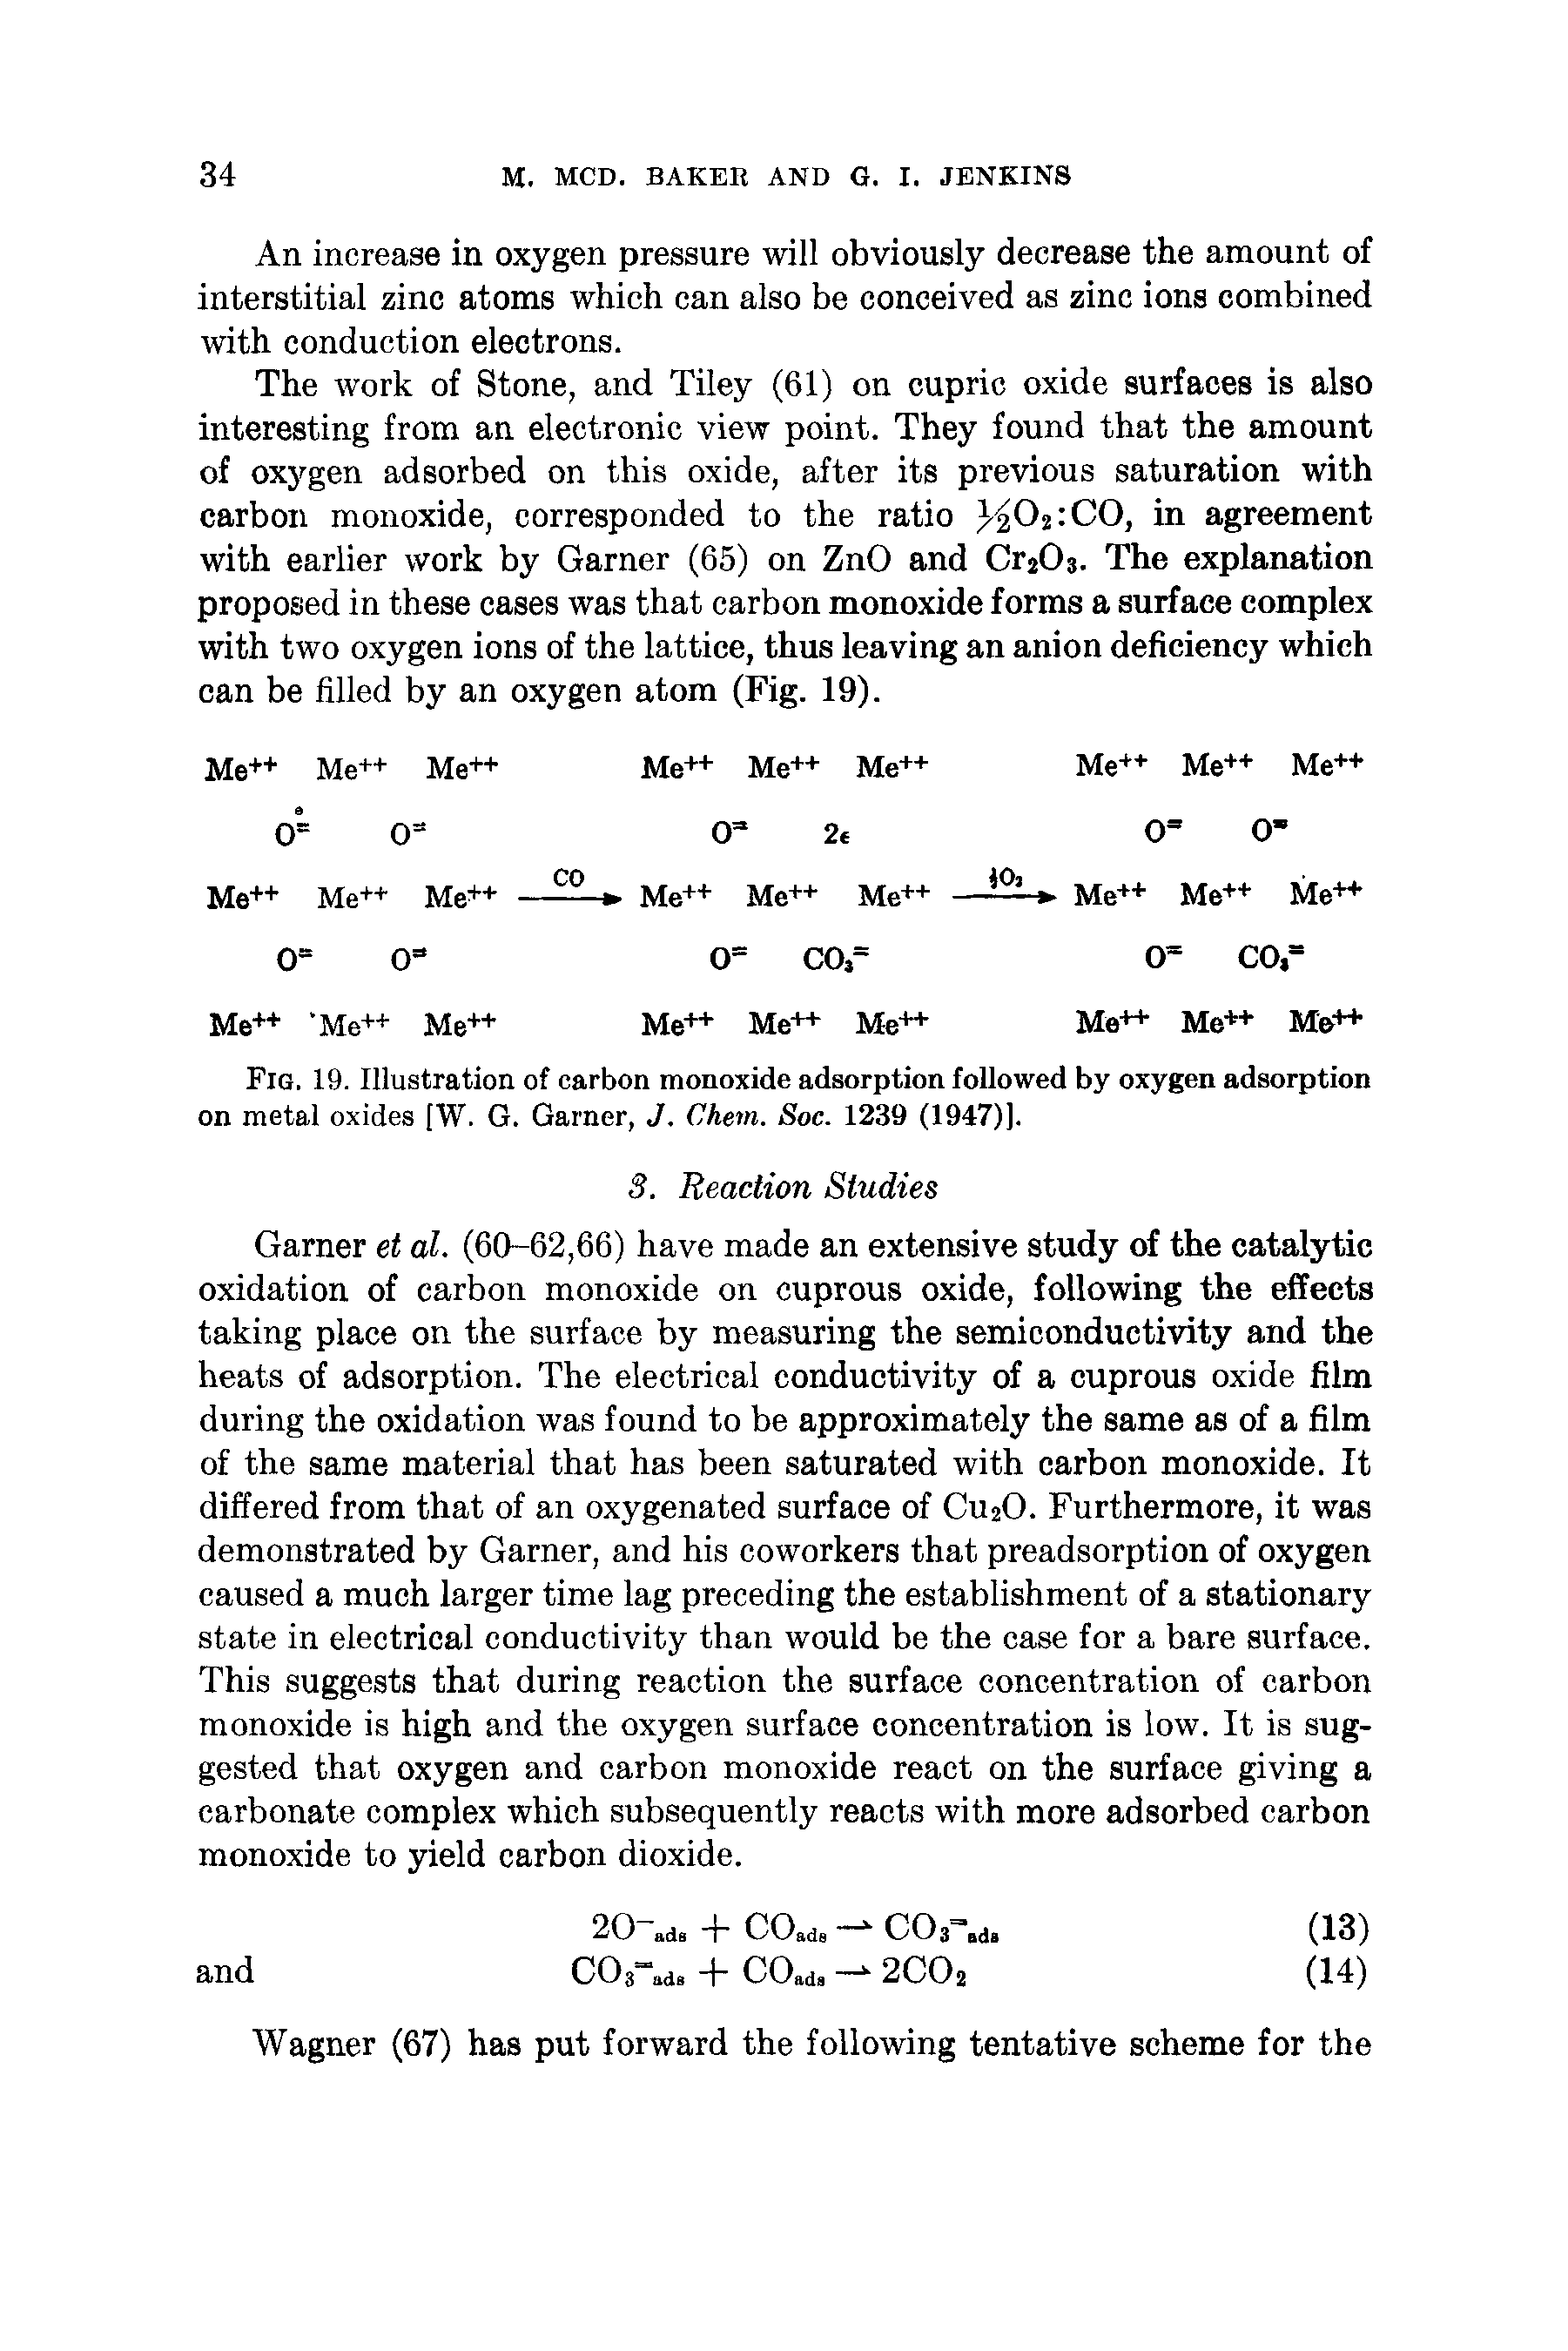 Fig. 19. Illustration of carbon monoxide adsorption followed by oxygen adsorption on metal oxides [W. G. Garner, J. Chem. Soc. 1239 (1947)].